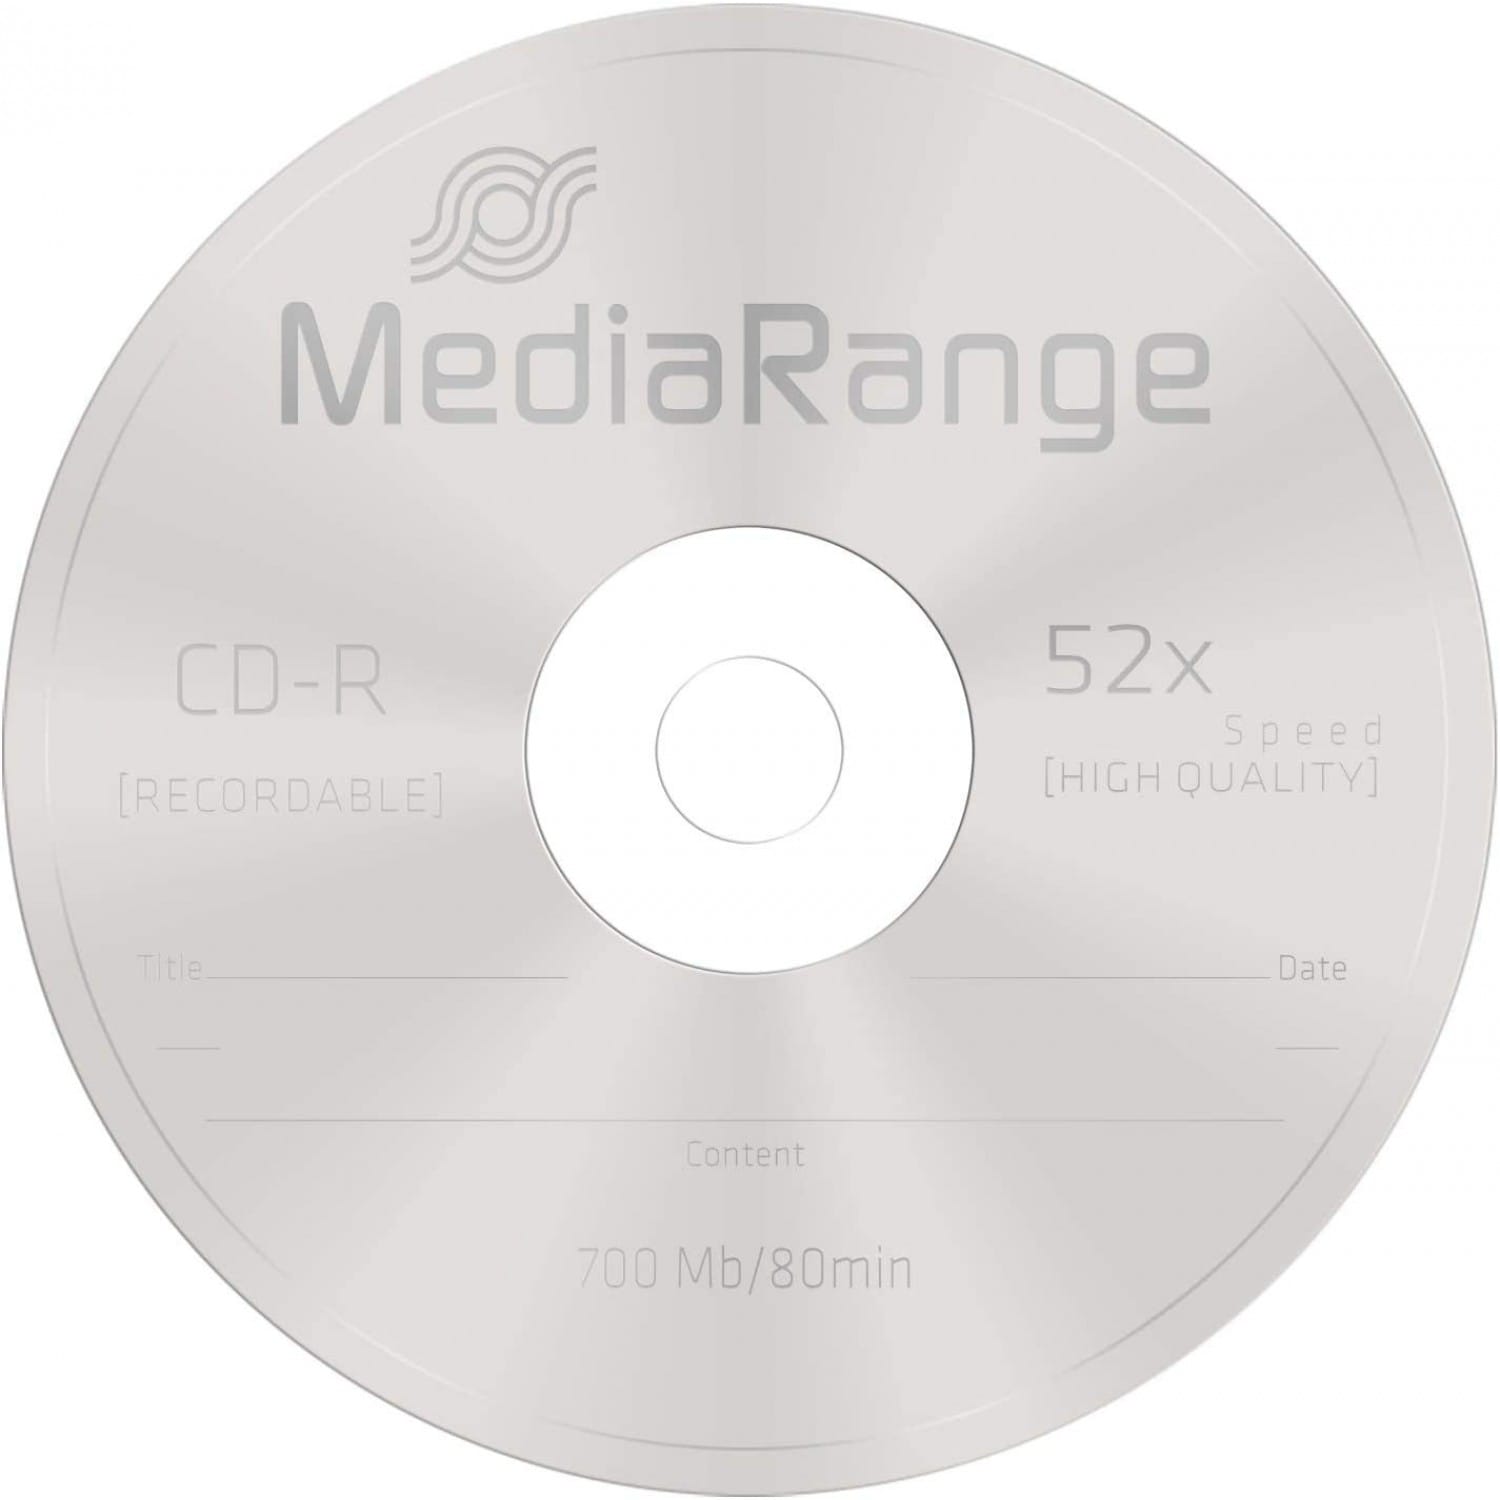 CD-R MEDIARANGE 700 Mo / 80min - Vitesse 52x - Tour de 25